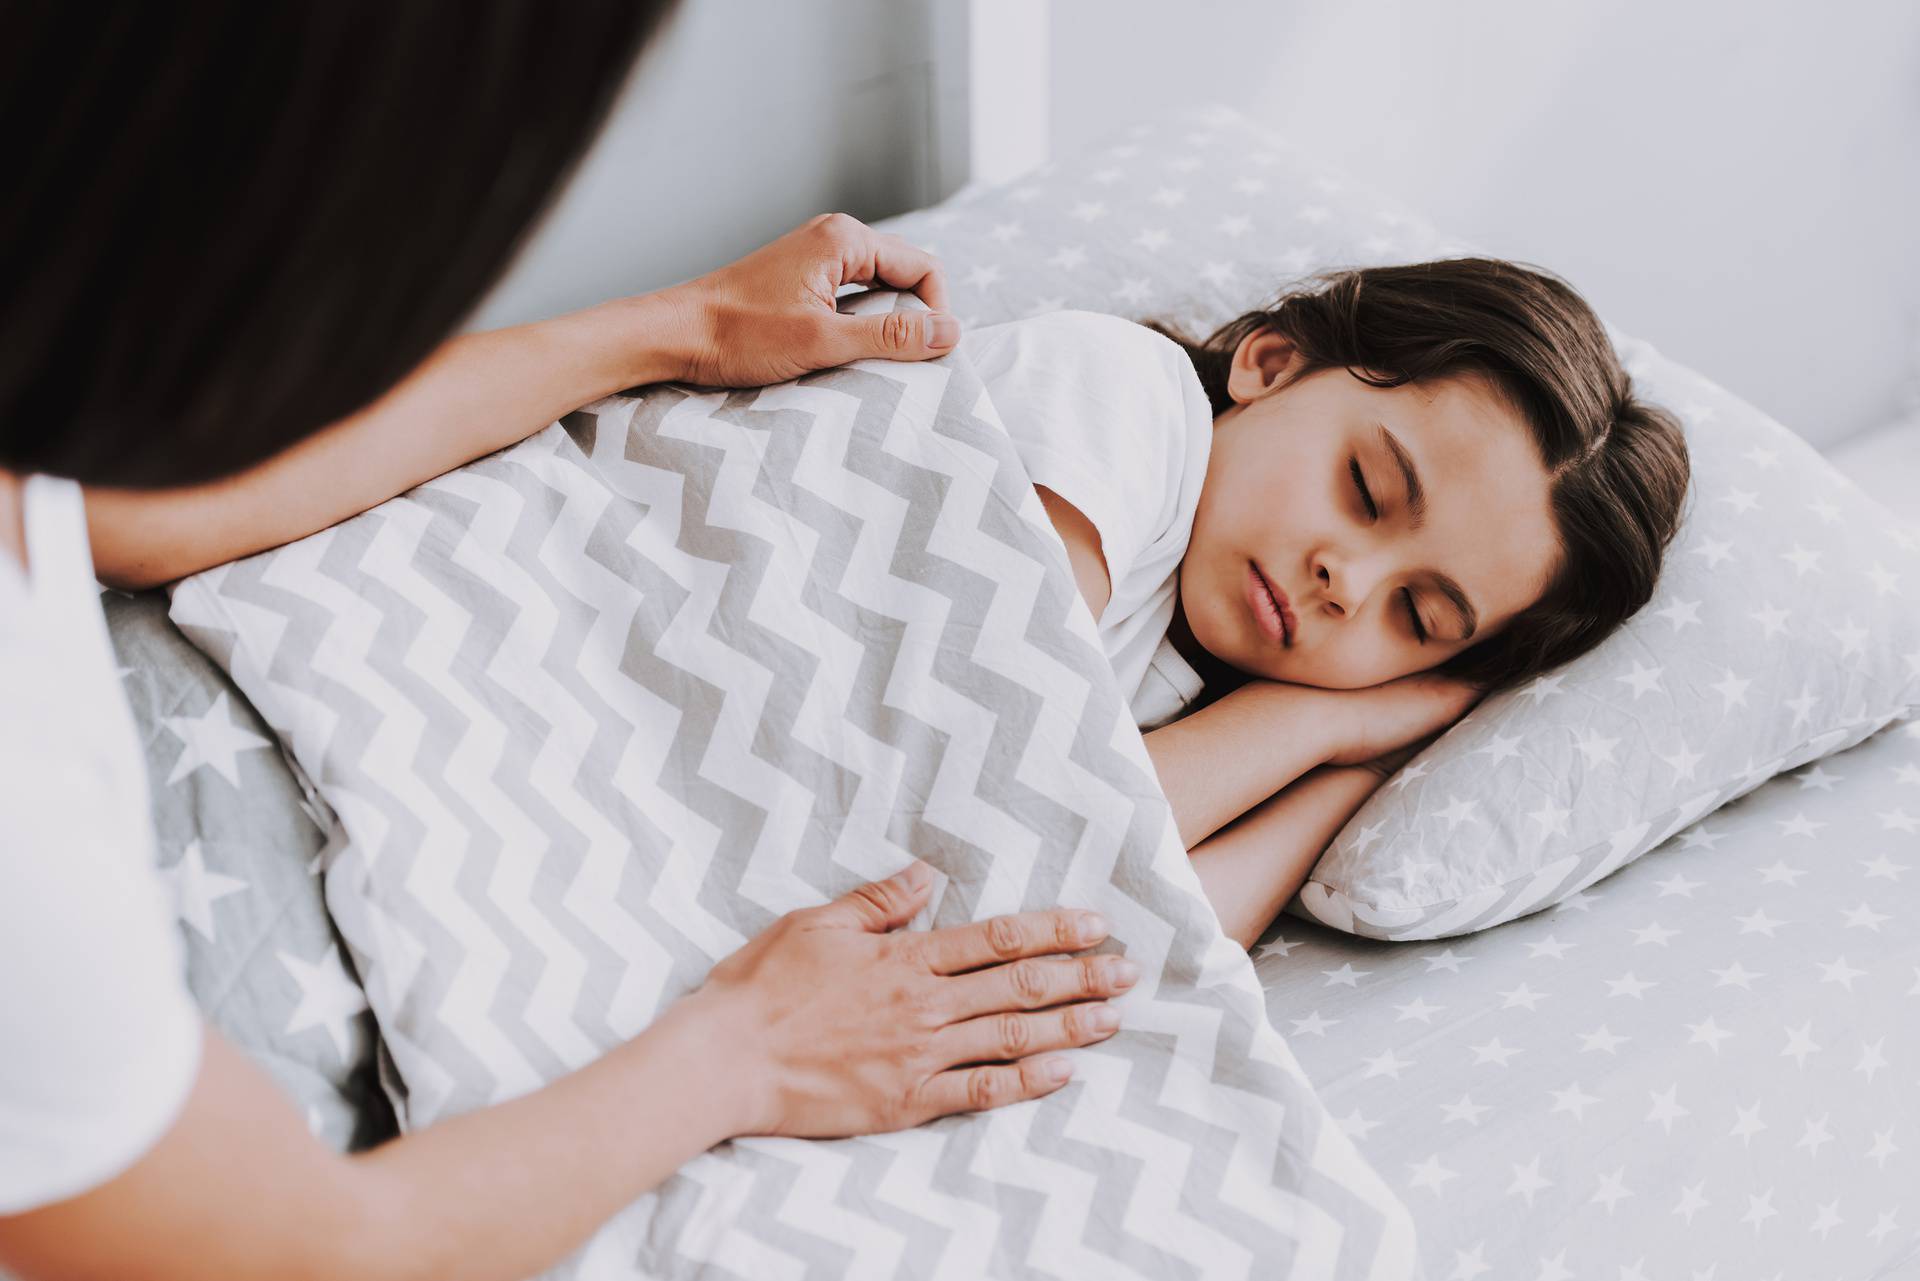 Ovih osam savjeta vam mogu pomoći da brže uspavate dijete